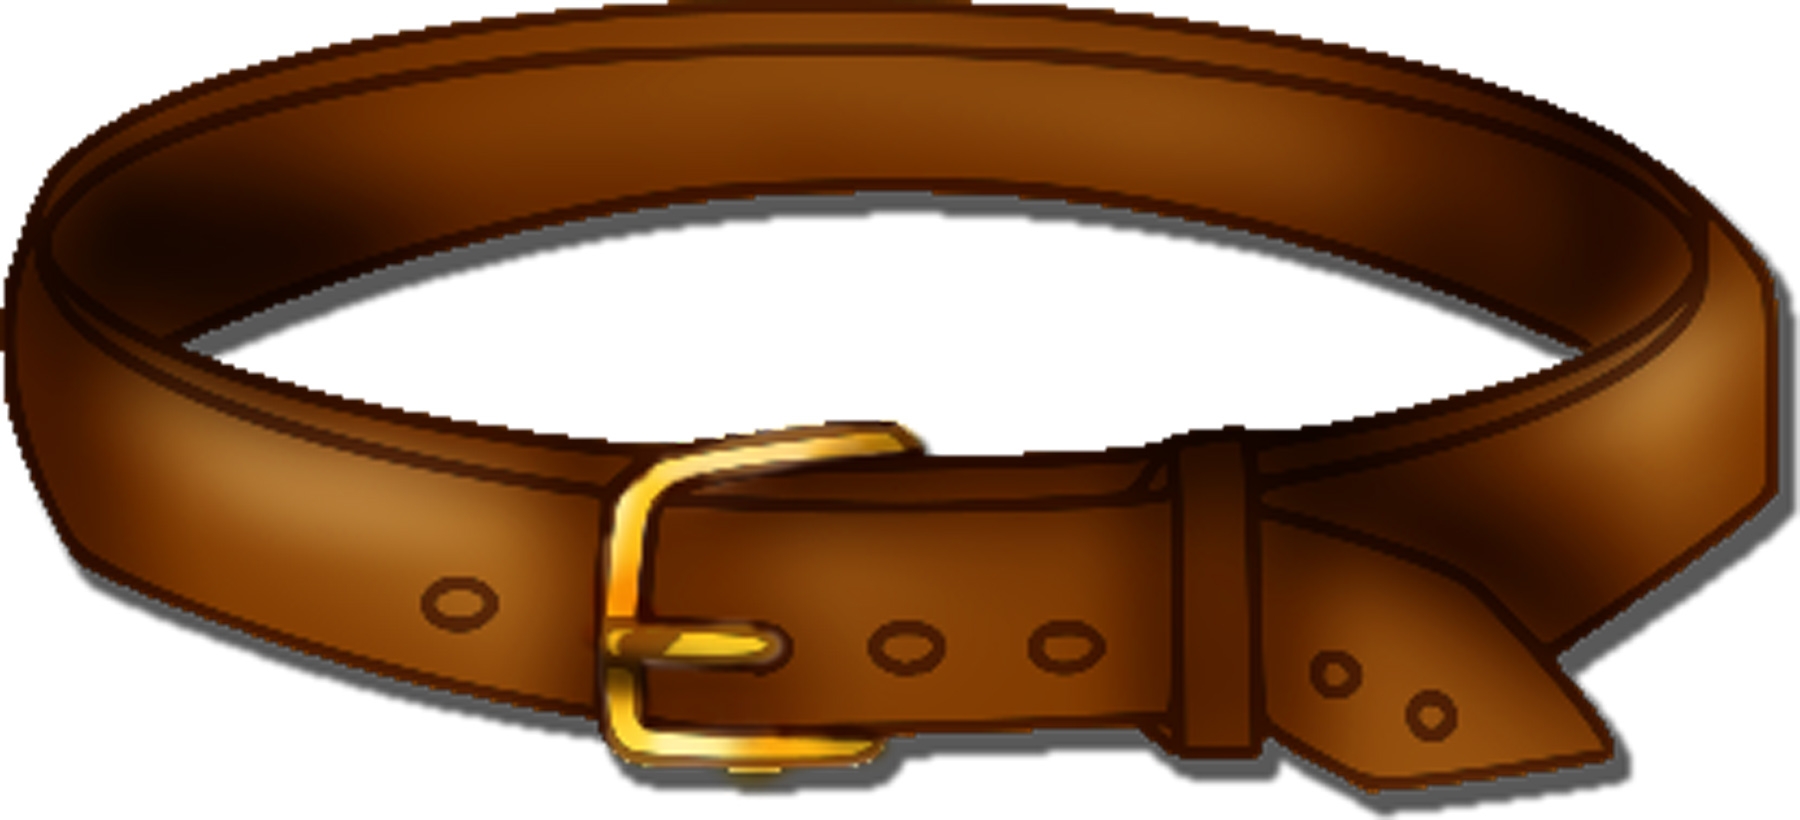 Belt clipart: belt clip art